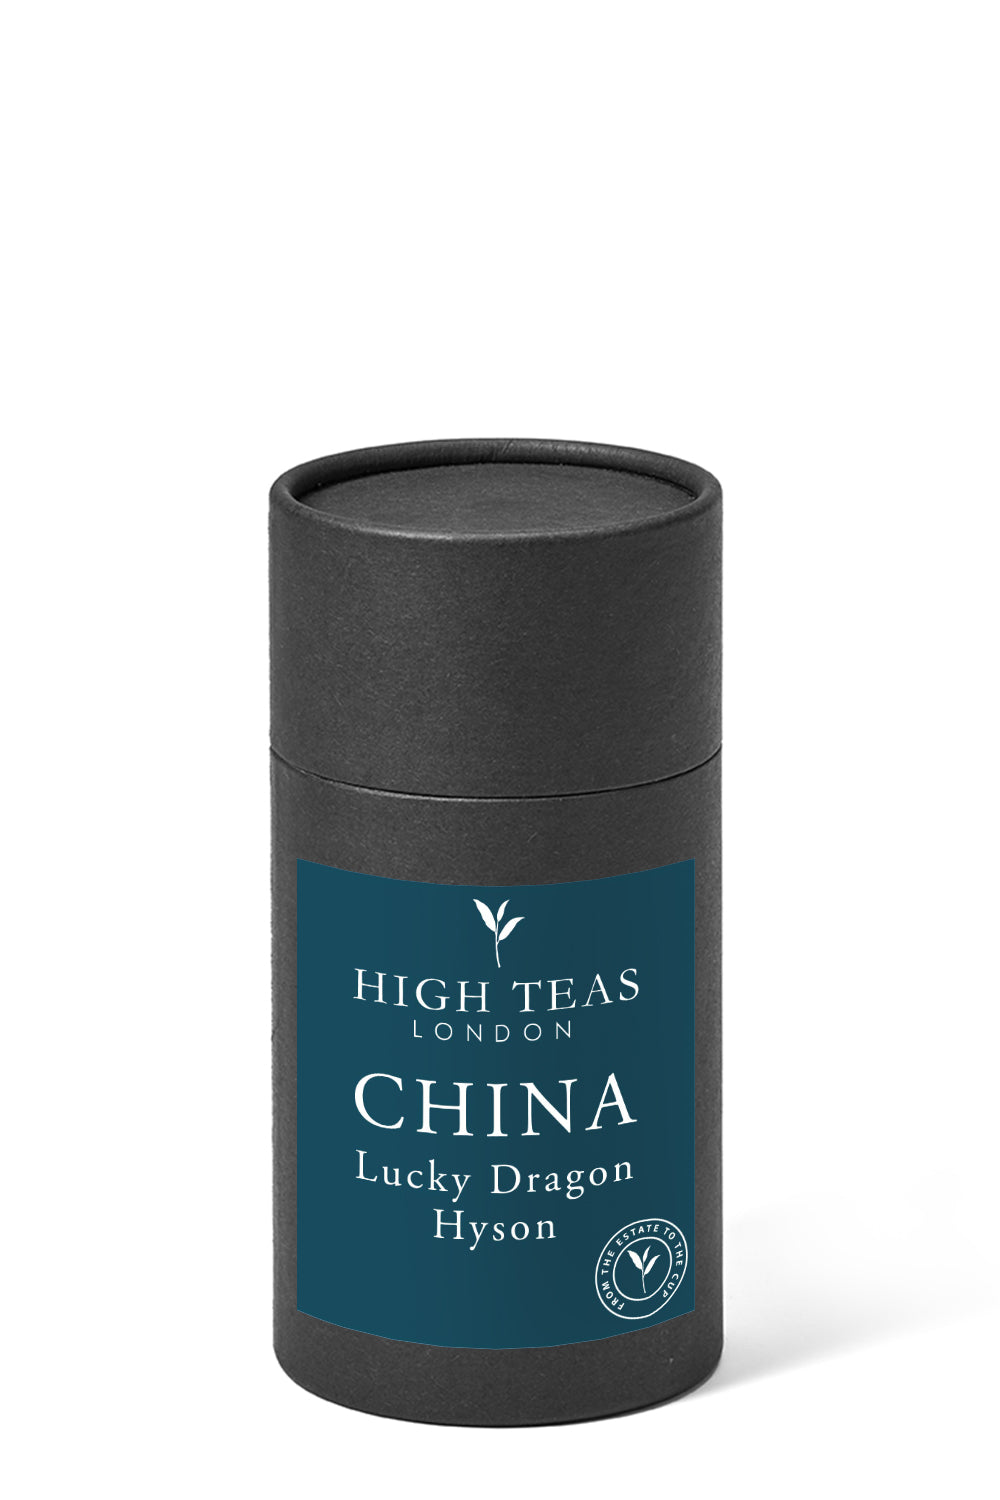 Lucky Dragon Hyson - Organic-60g gift-Loose Leaf Tea-High Teas